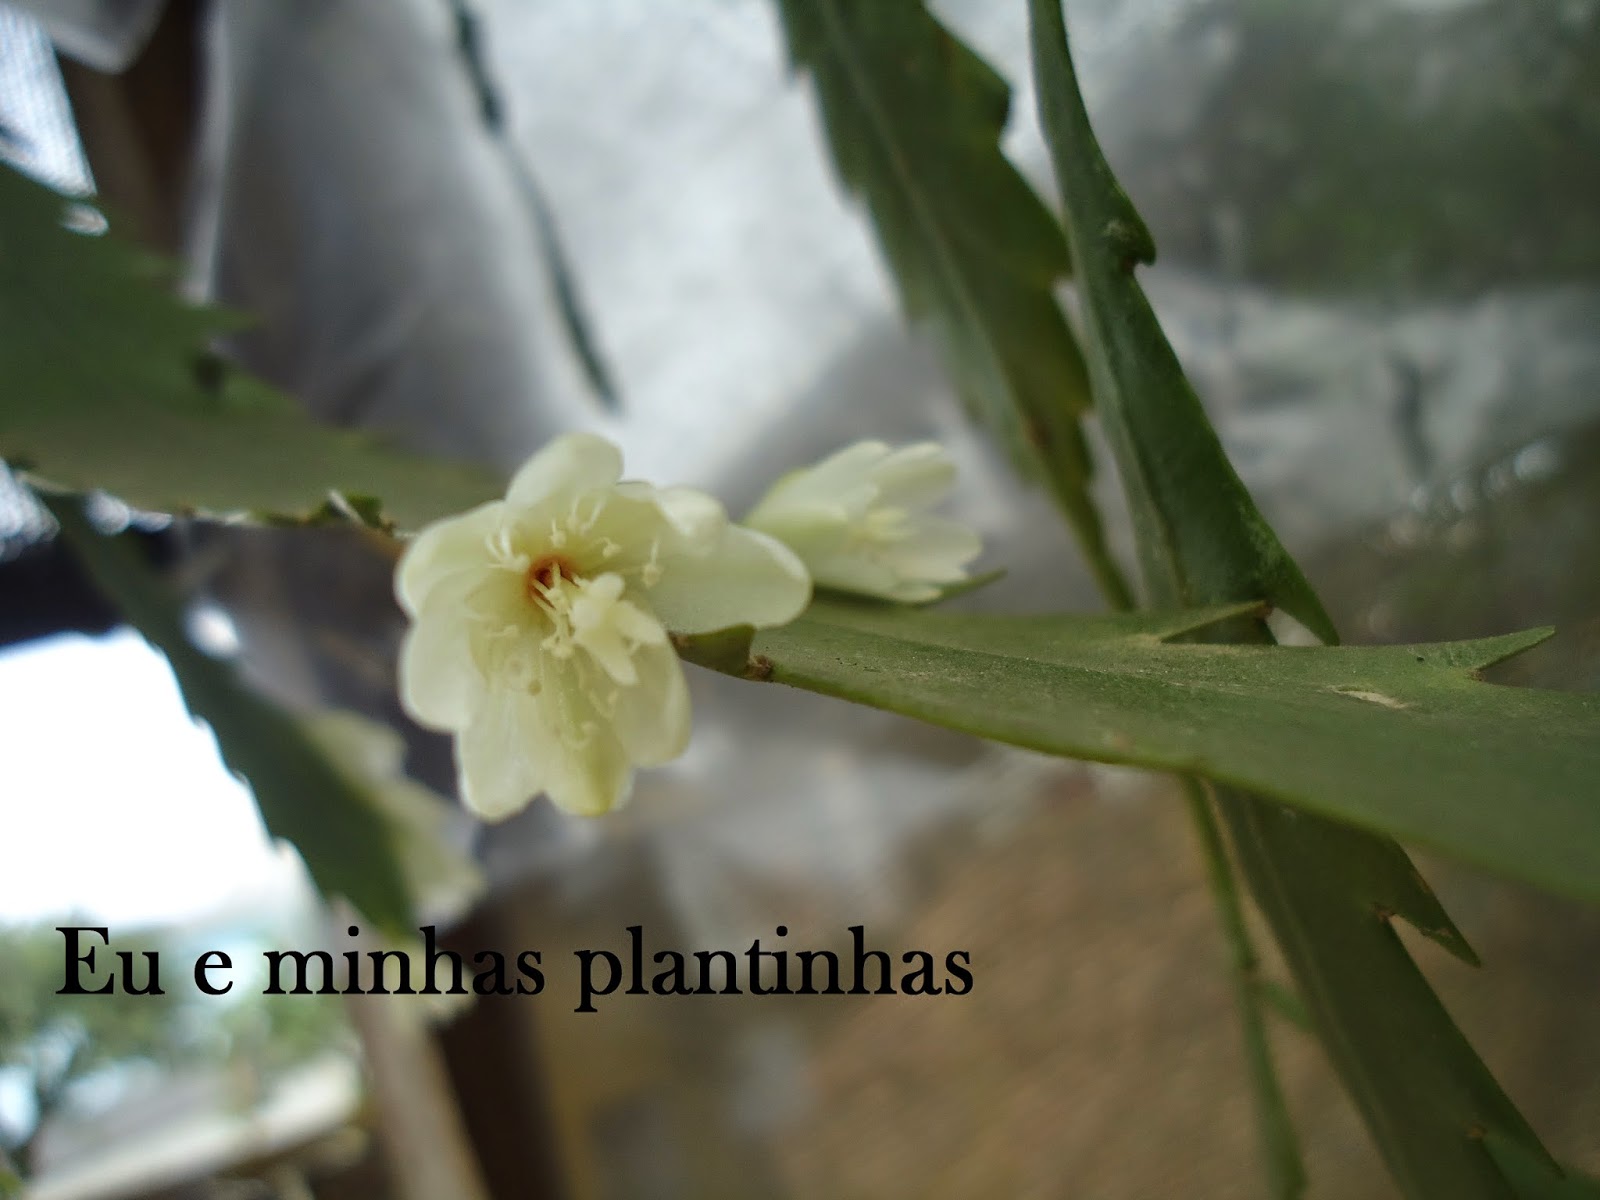 Eu e minhas plantinhas: Cacto serrote (Lepismium houlletianum).